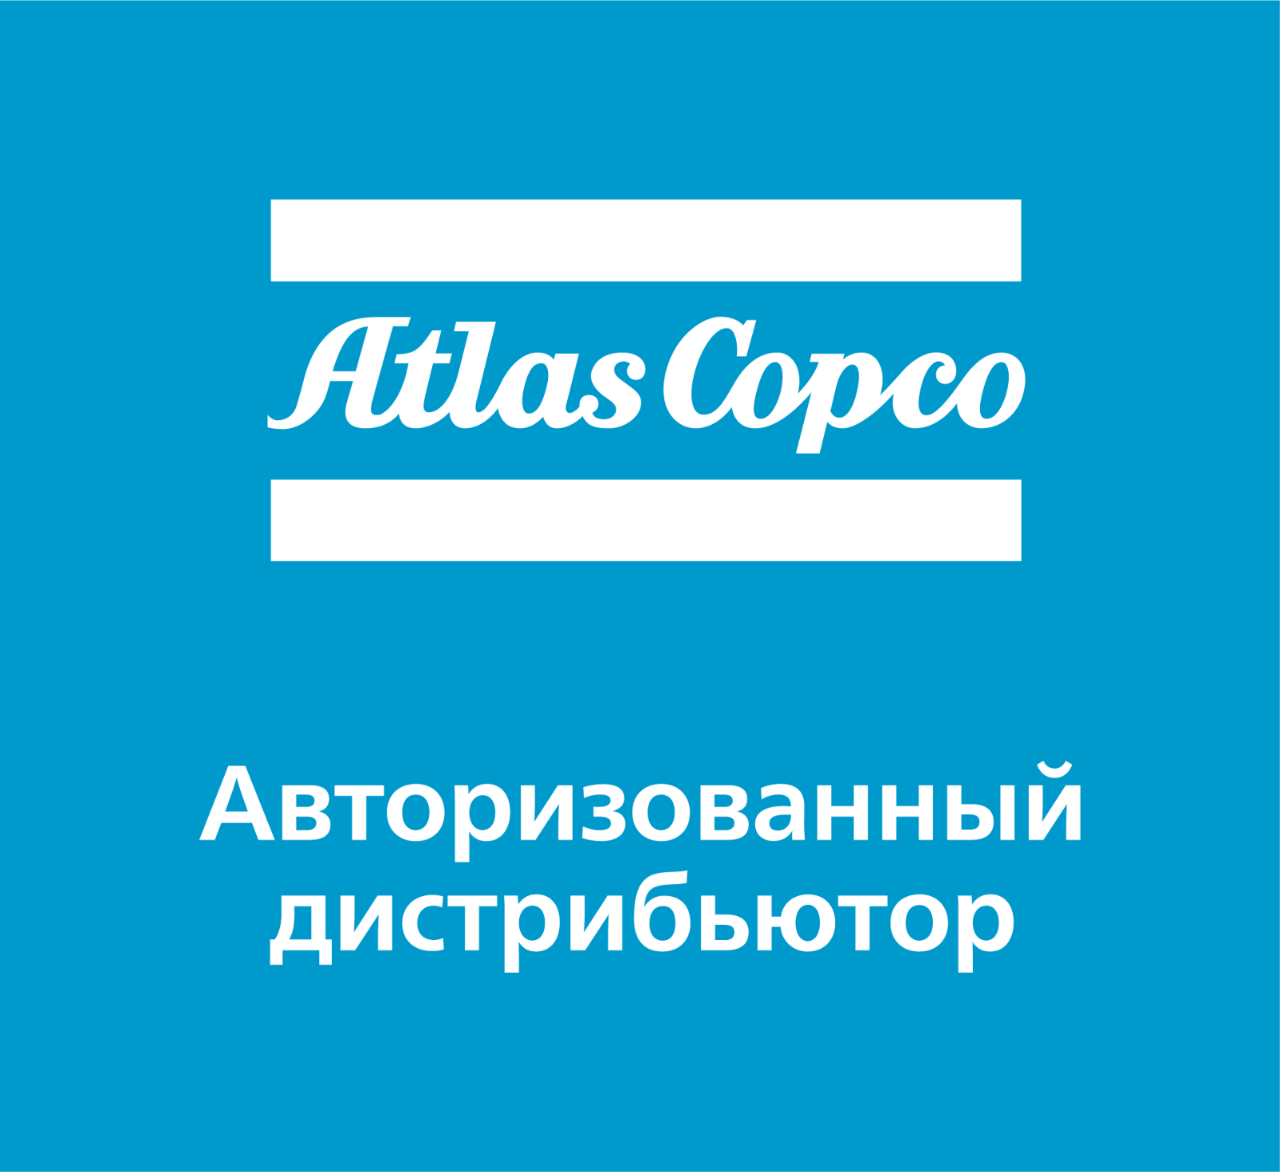 Оборудование Atlas Copco по оптимальным ценам!